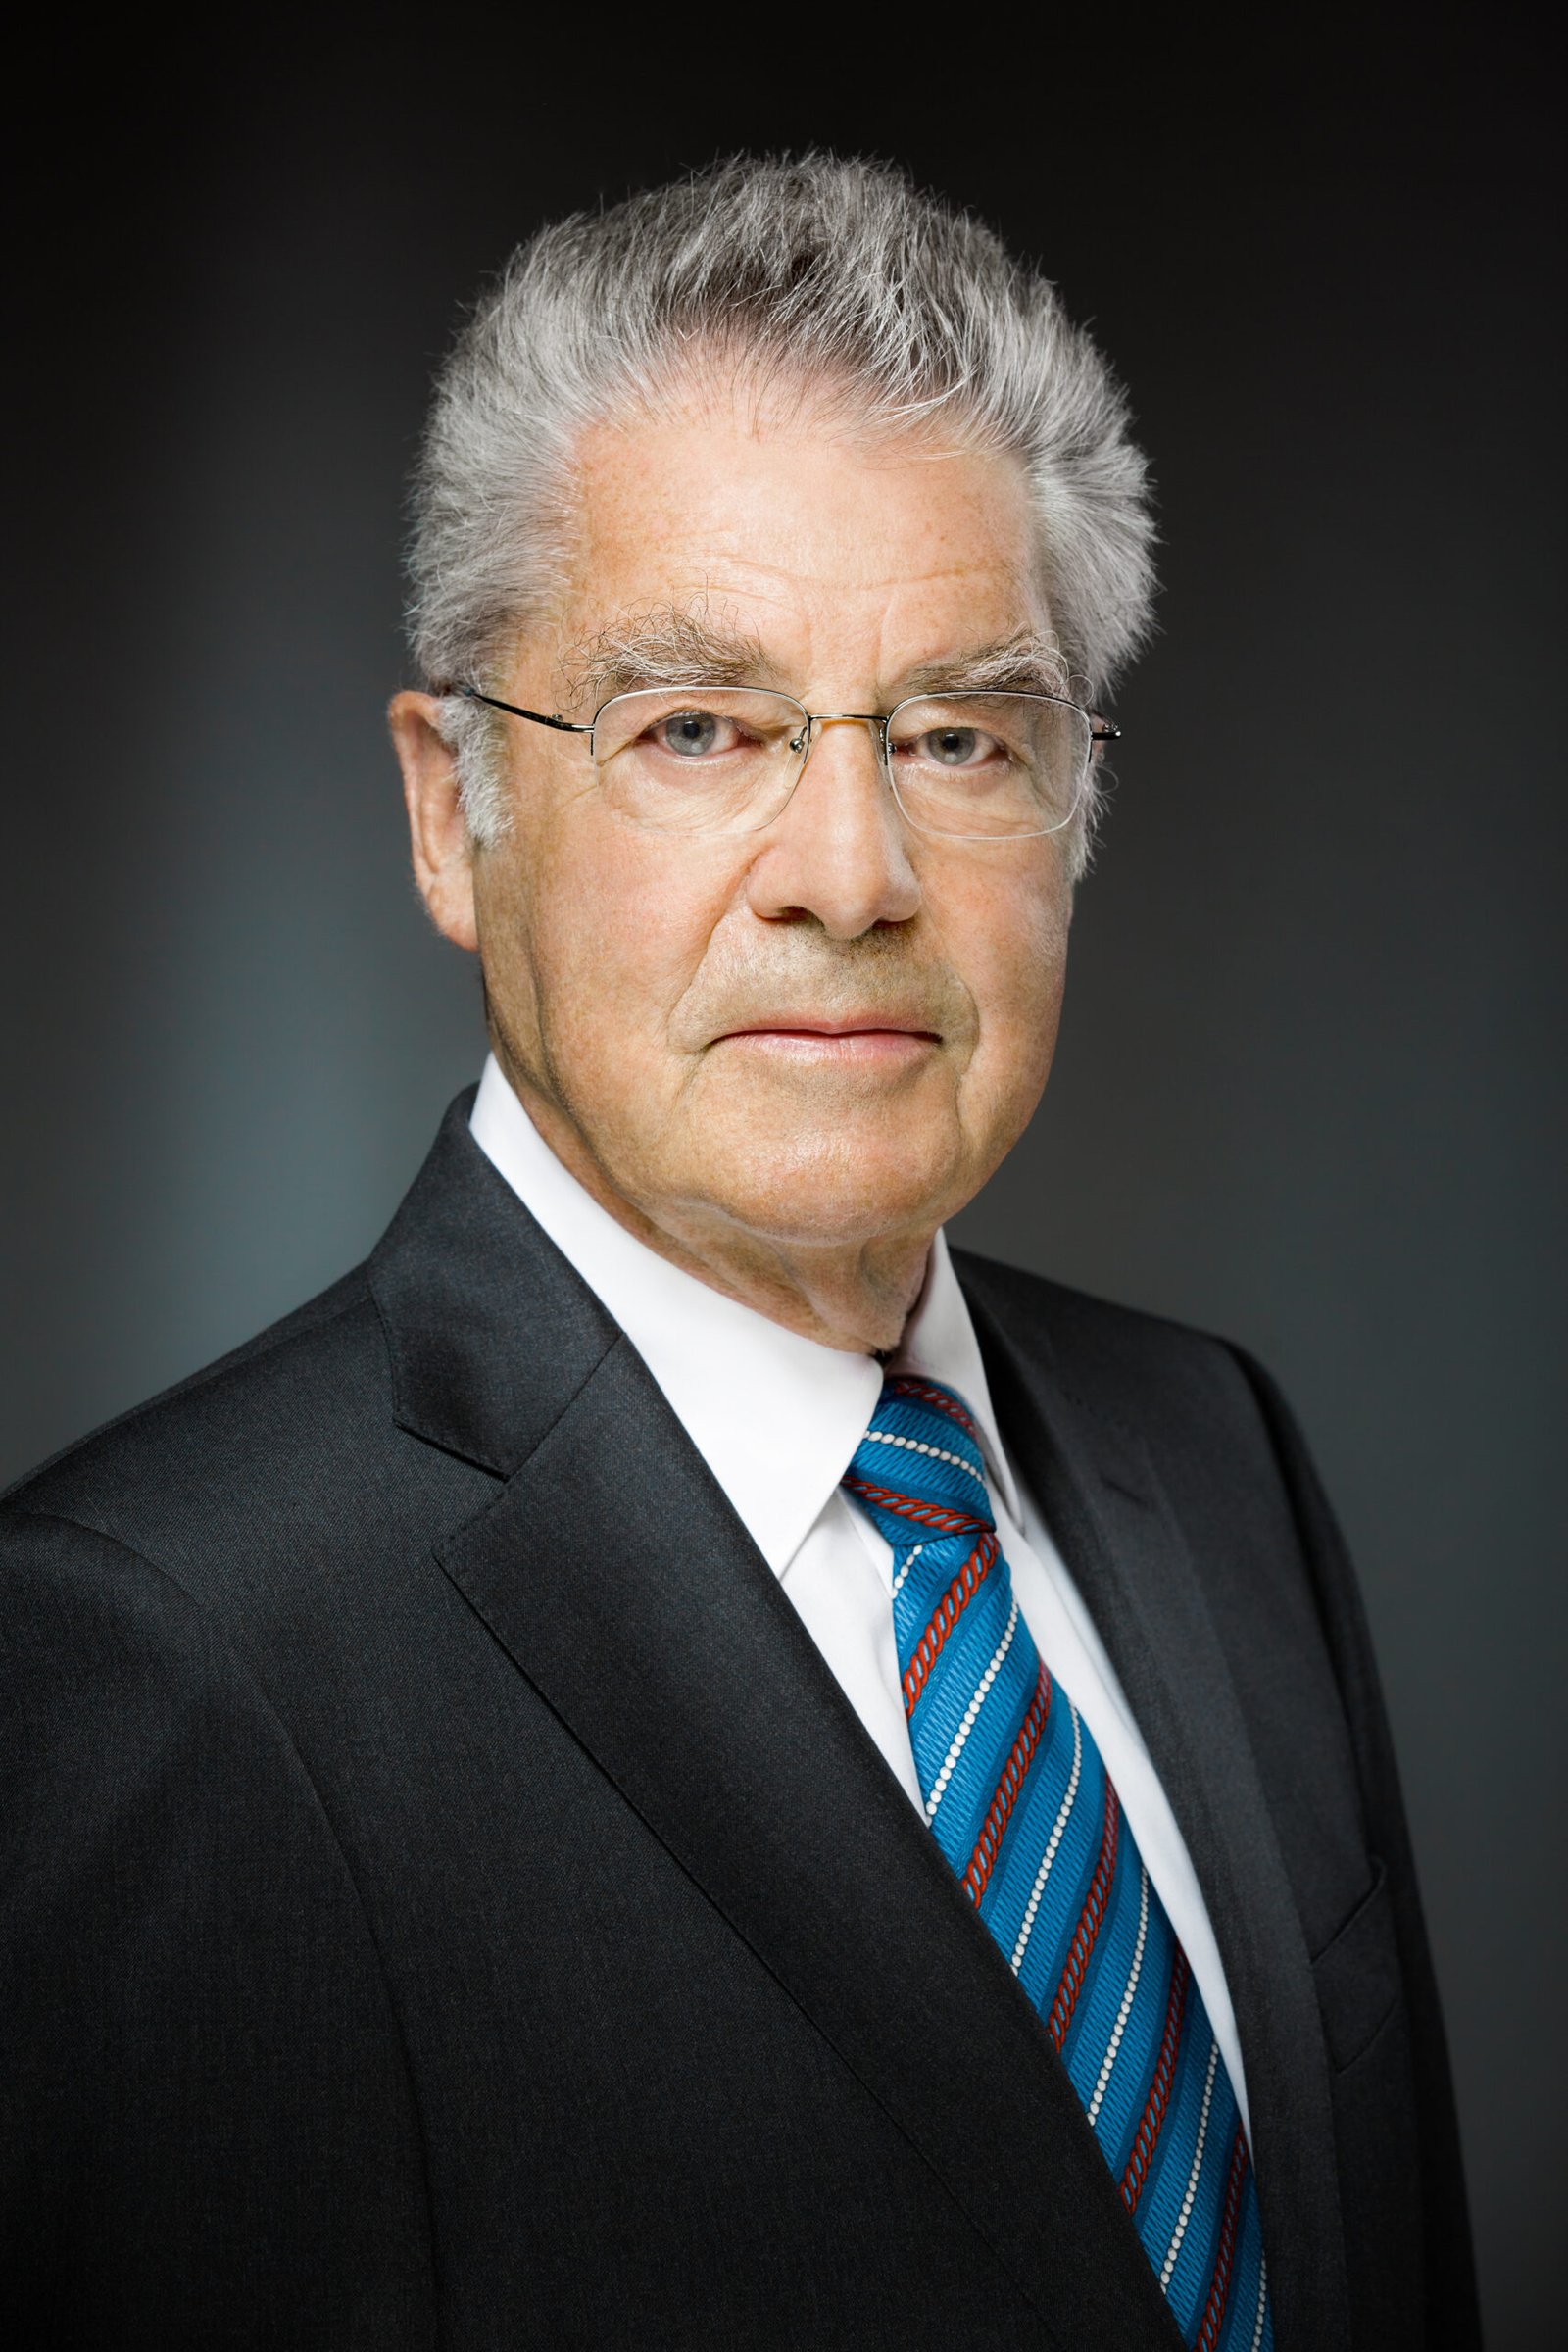 Dr. Heinz Fischer